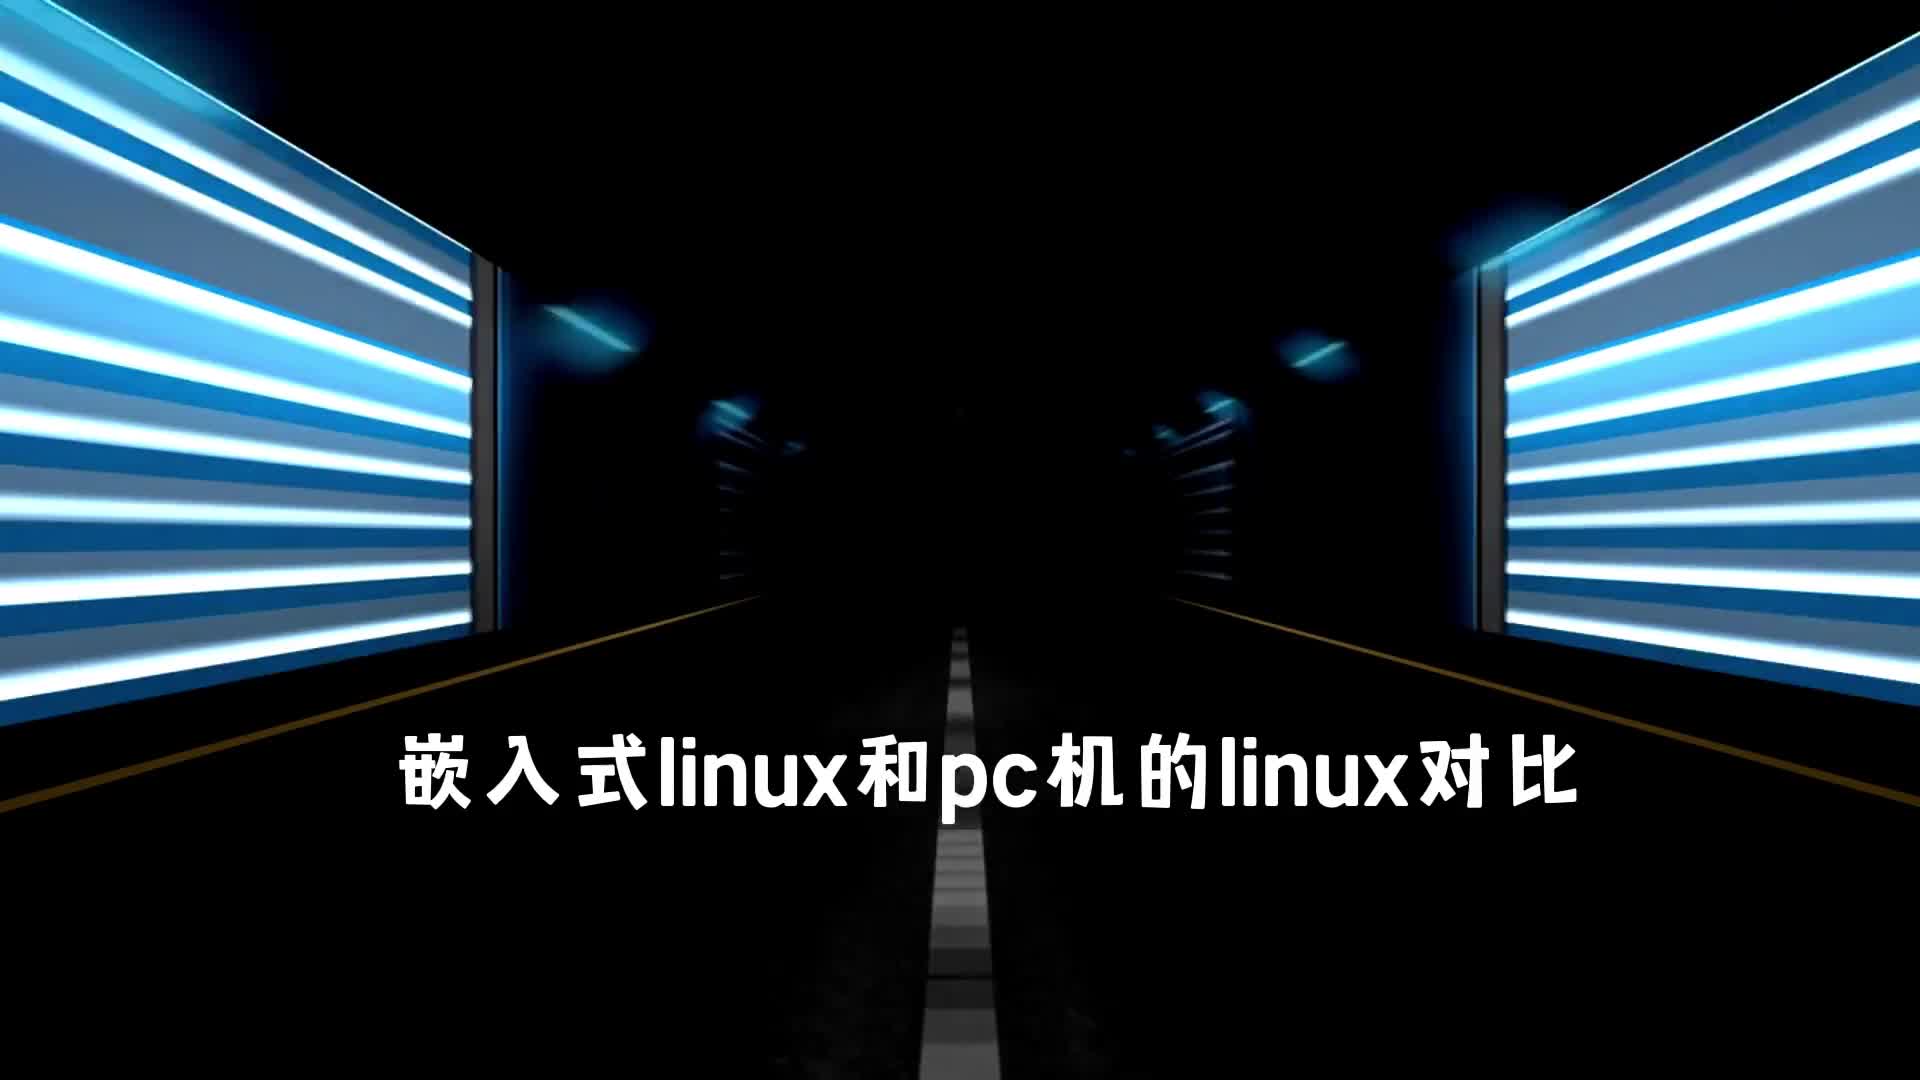 嵌入式linux和pc机的linux对比